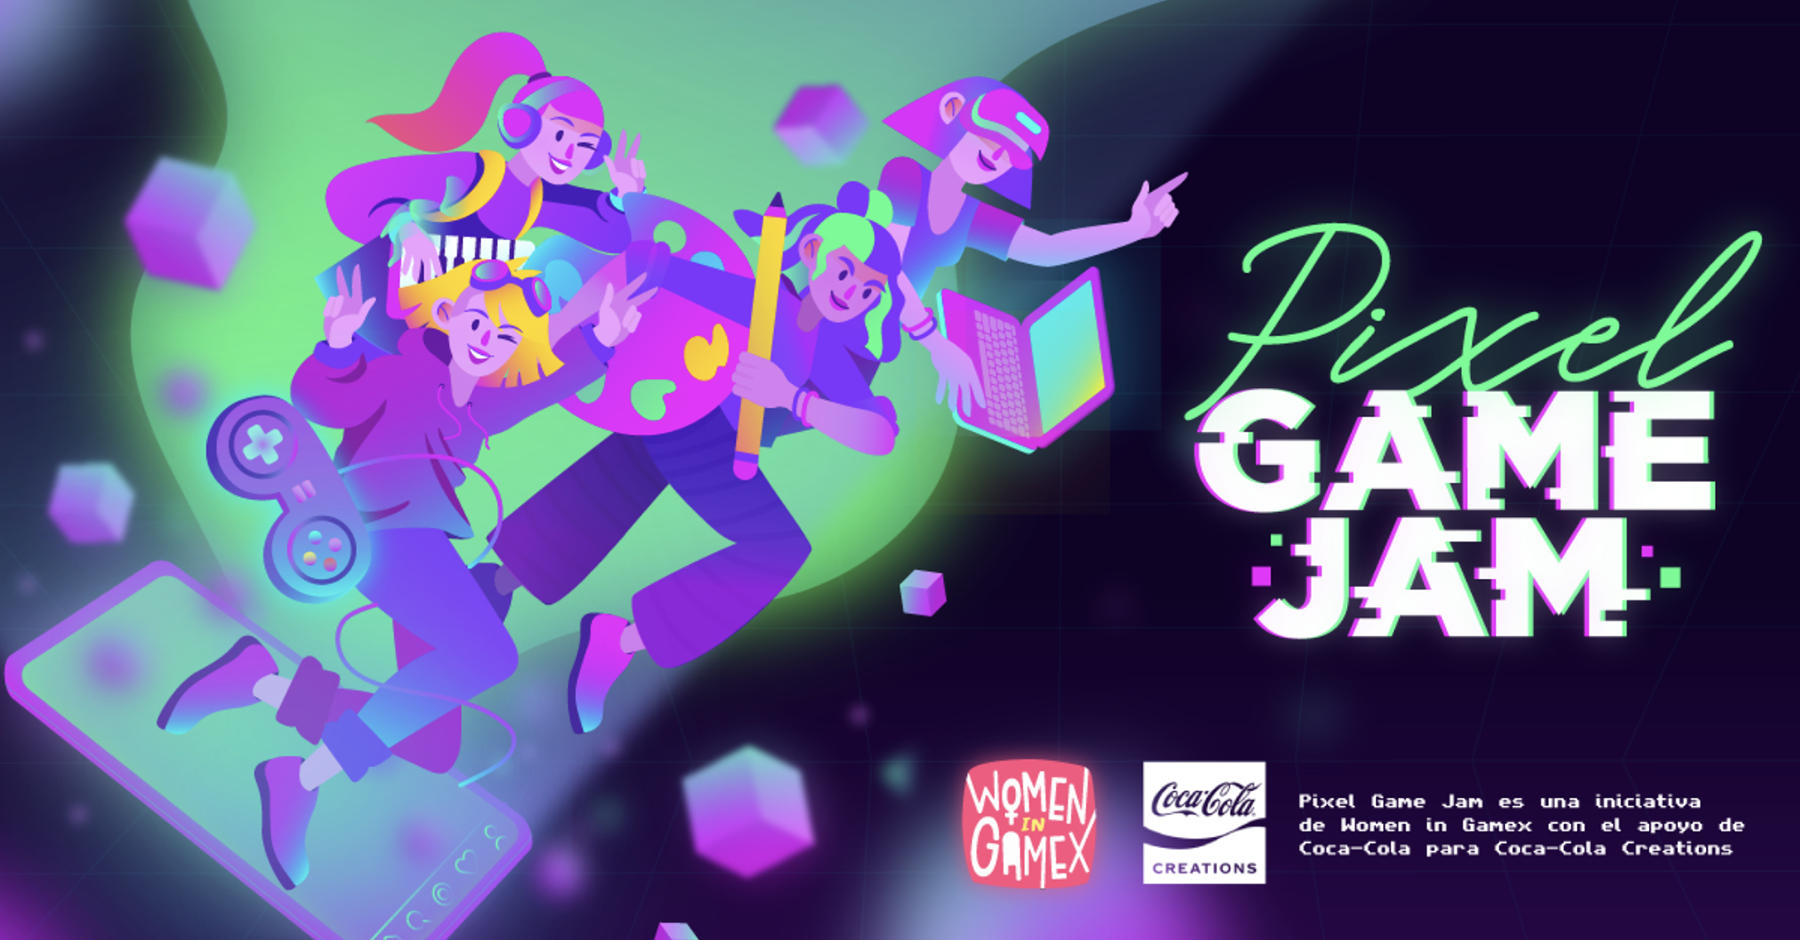 Pixel Game Jam: Coca-Cola Creations apoya a las mujeres en los juegos con Homen en Gamex.